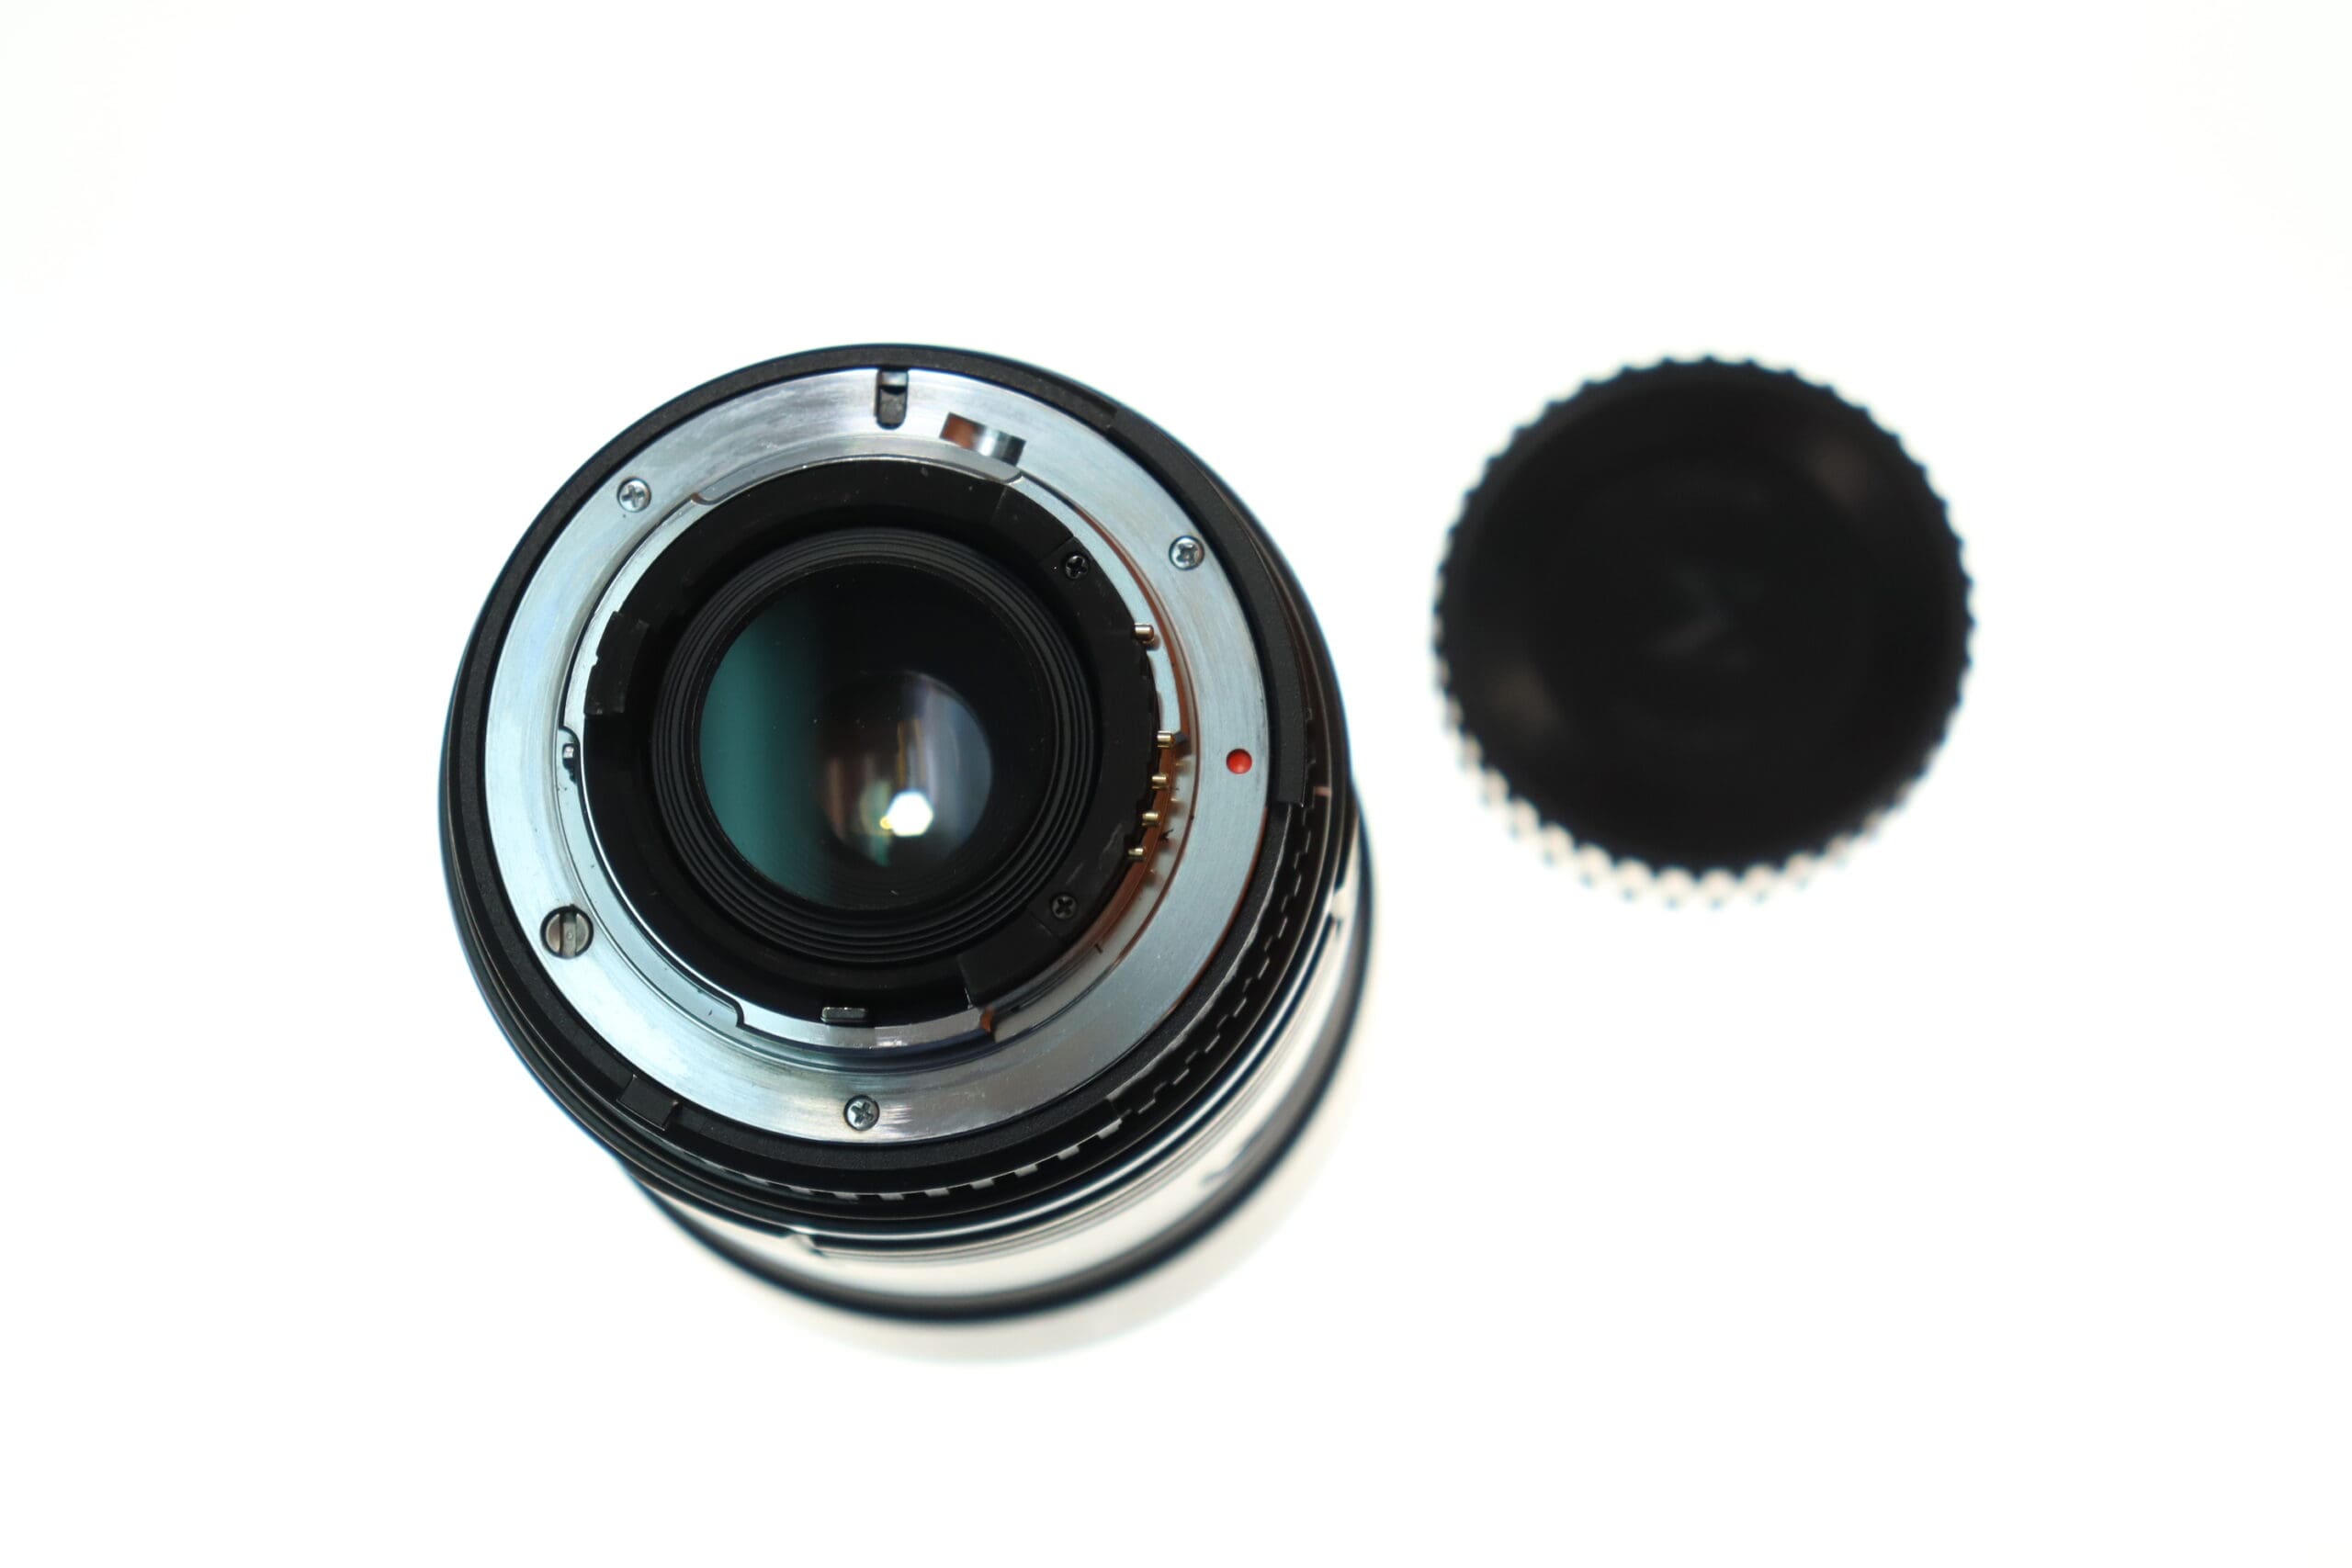 Sigma 28-70mm f3.5-4.5 AF UC zoom for Nikon